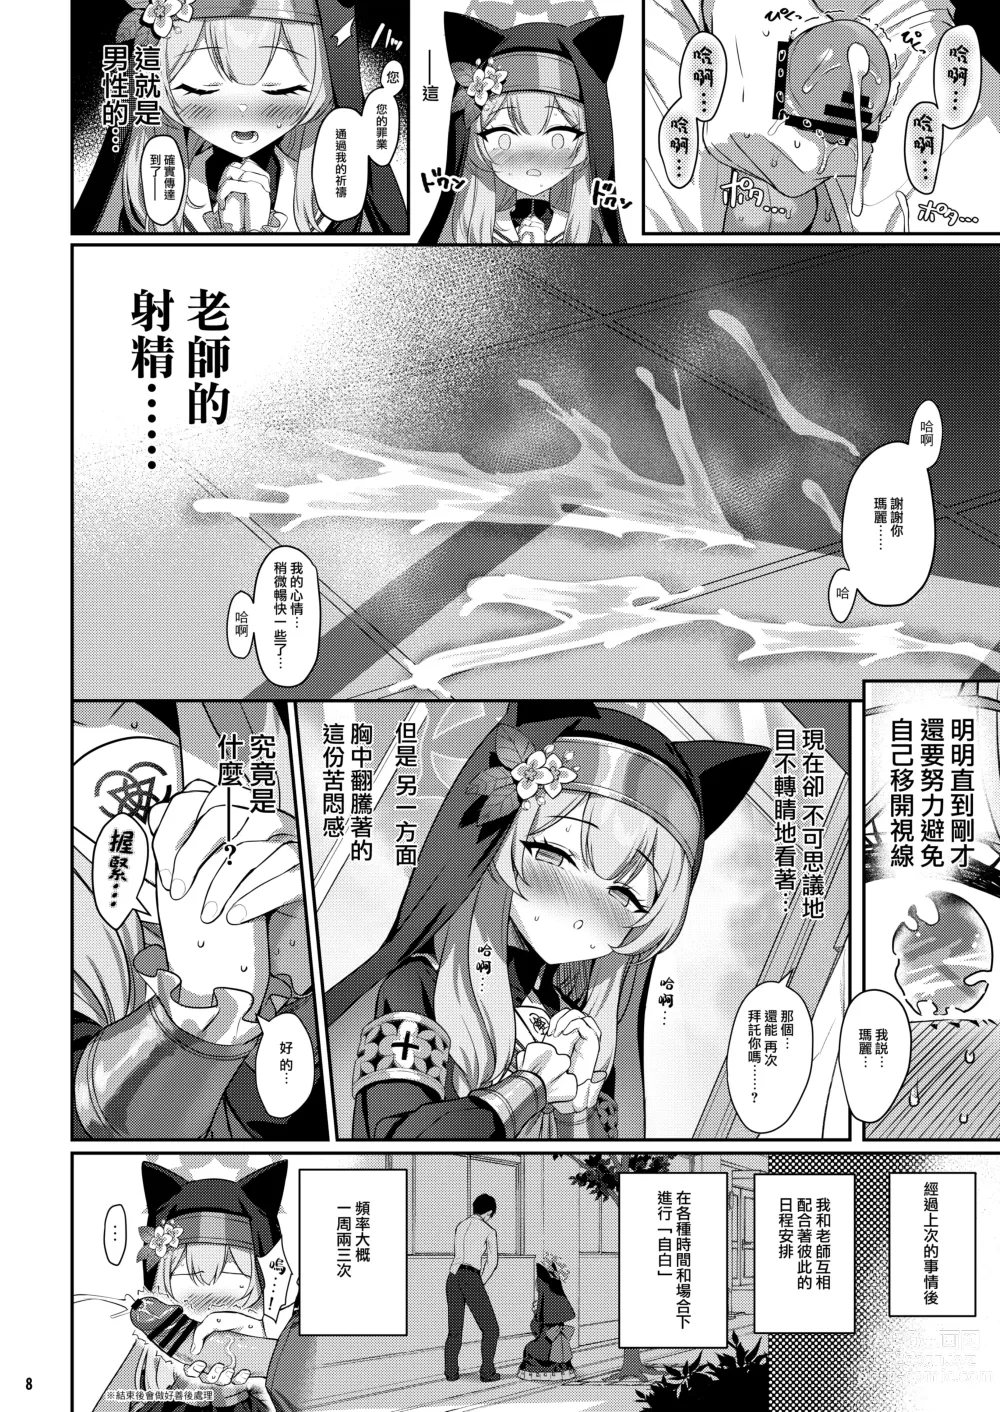 Page 8 of doujinshi Idaraku